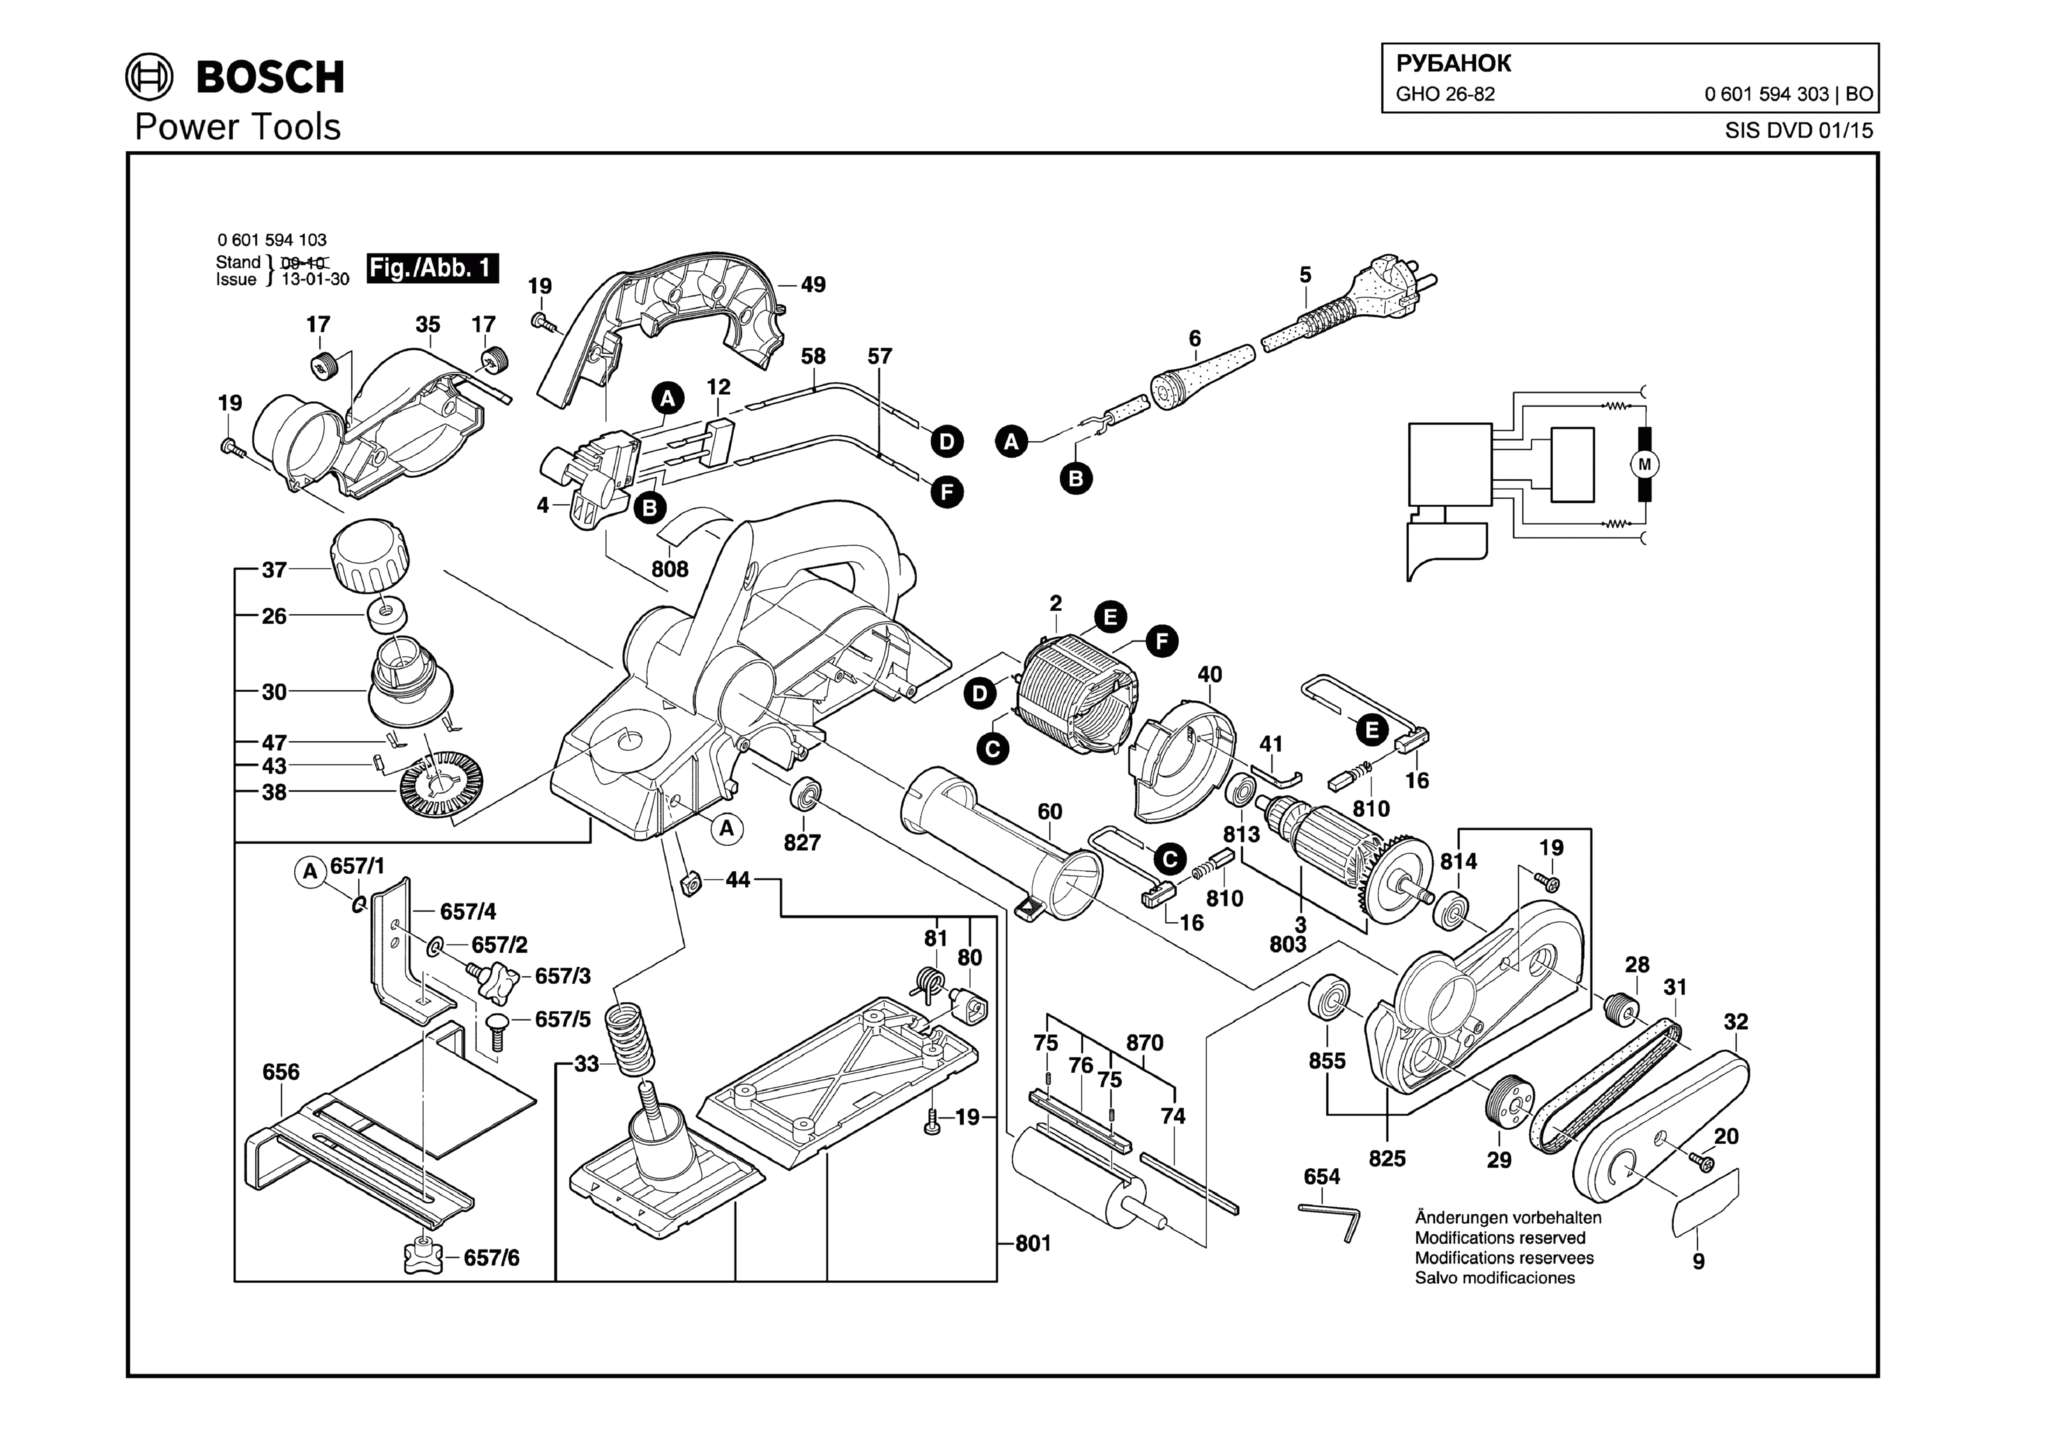 Запчасти, схема и деталировка Bosch GHO 26-82 (ТИП 0601594303)